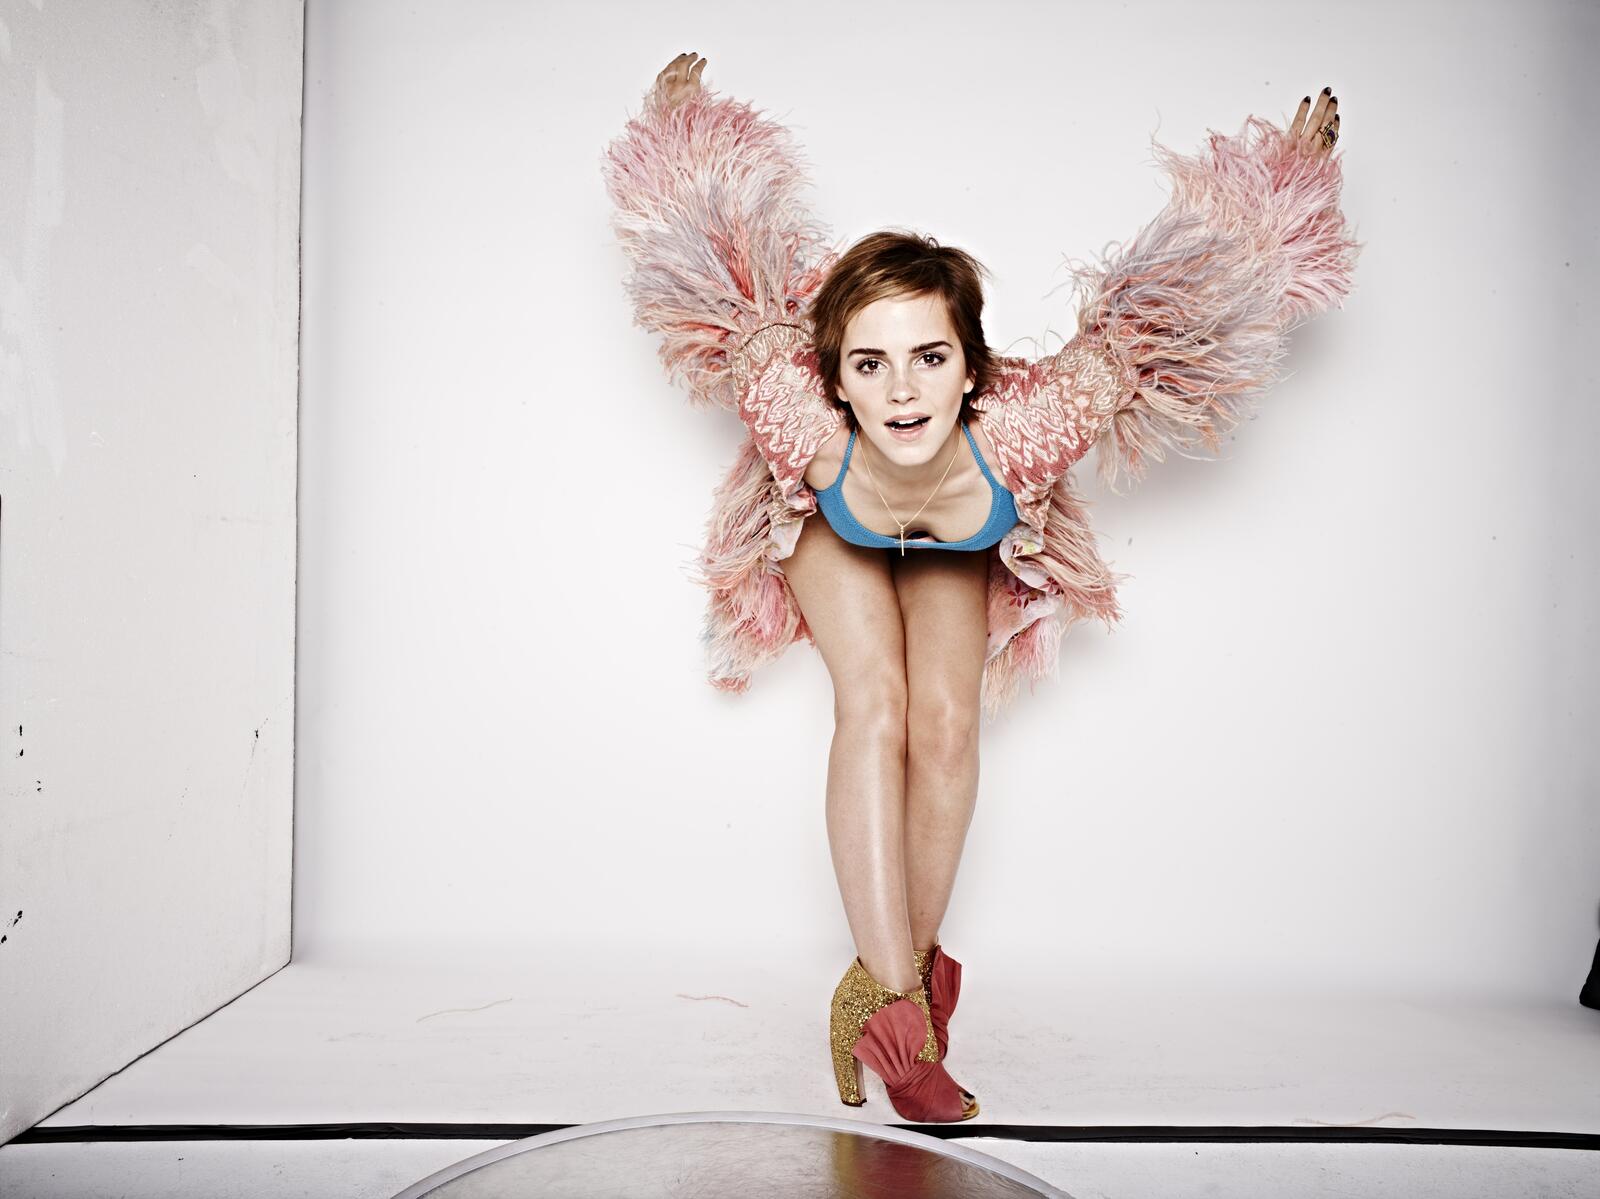 Wallpapers Emma Watson wings celebrity on the desktop